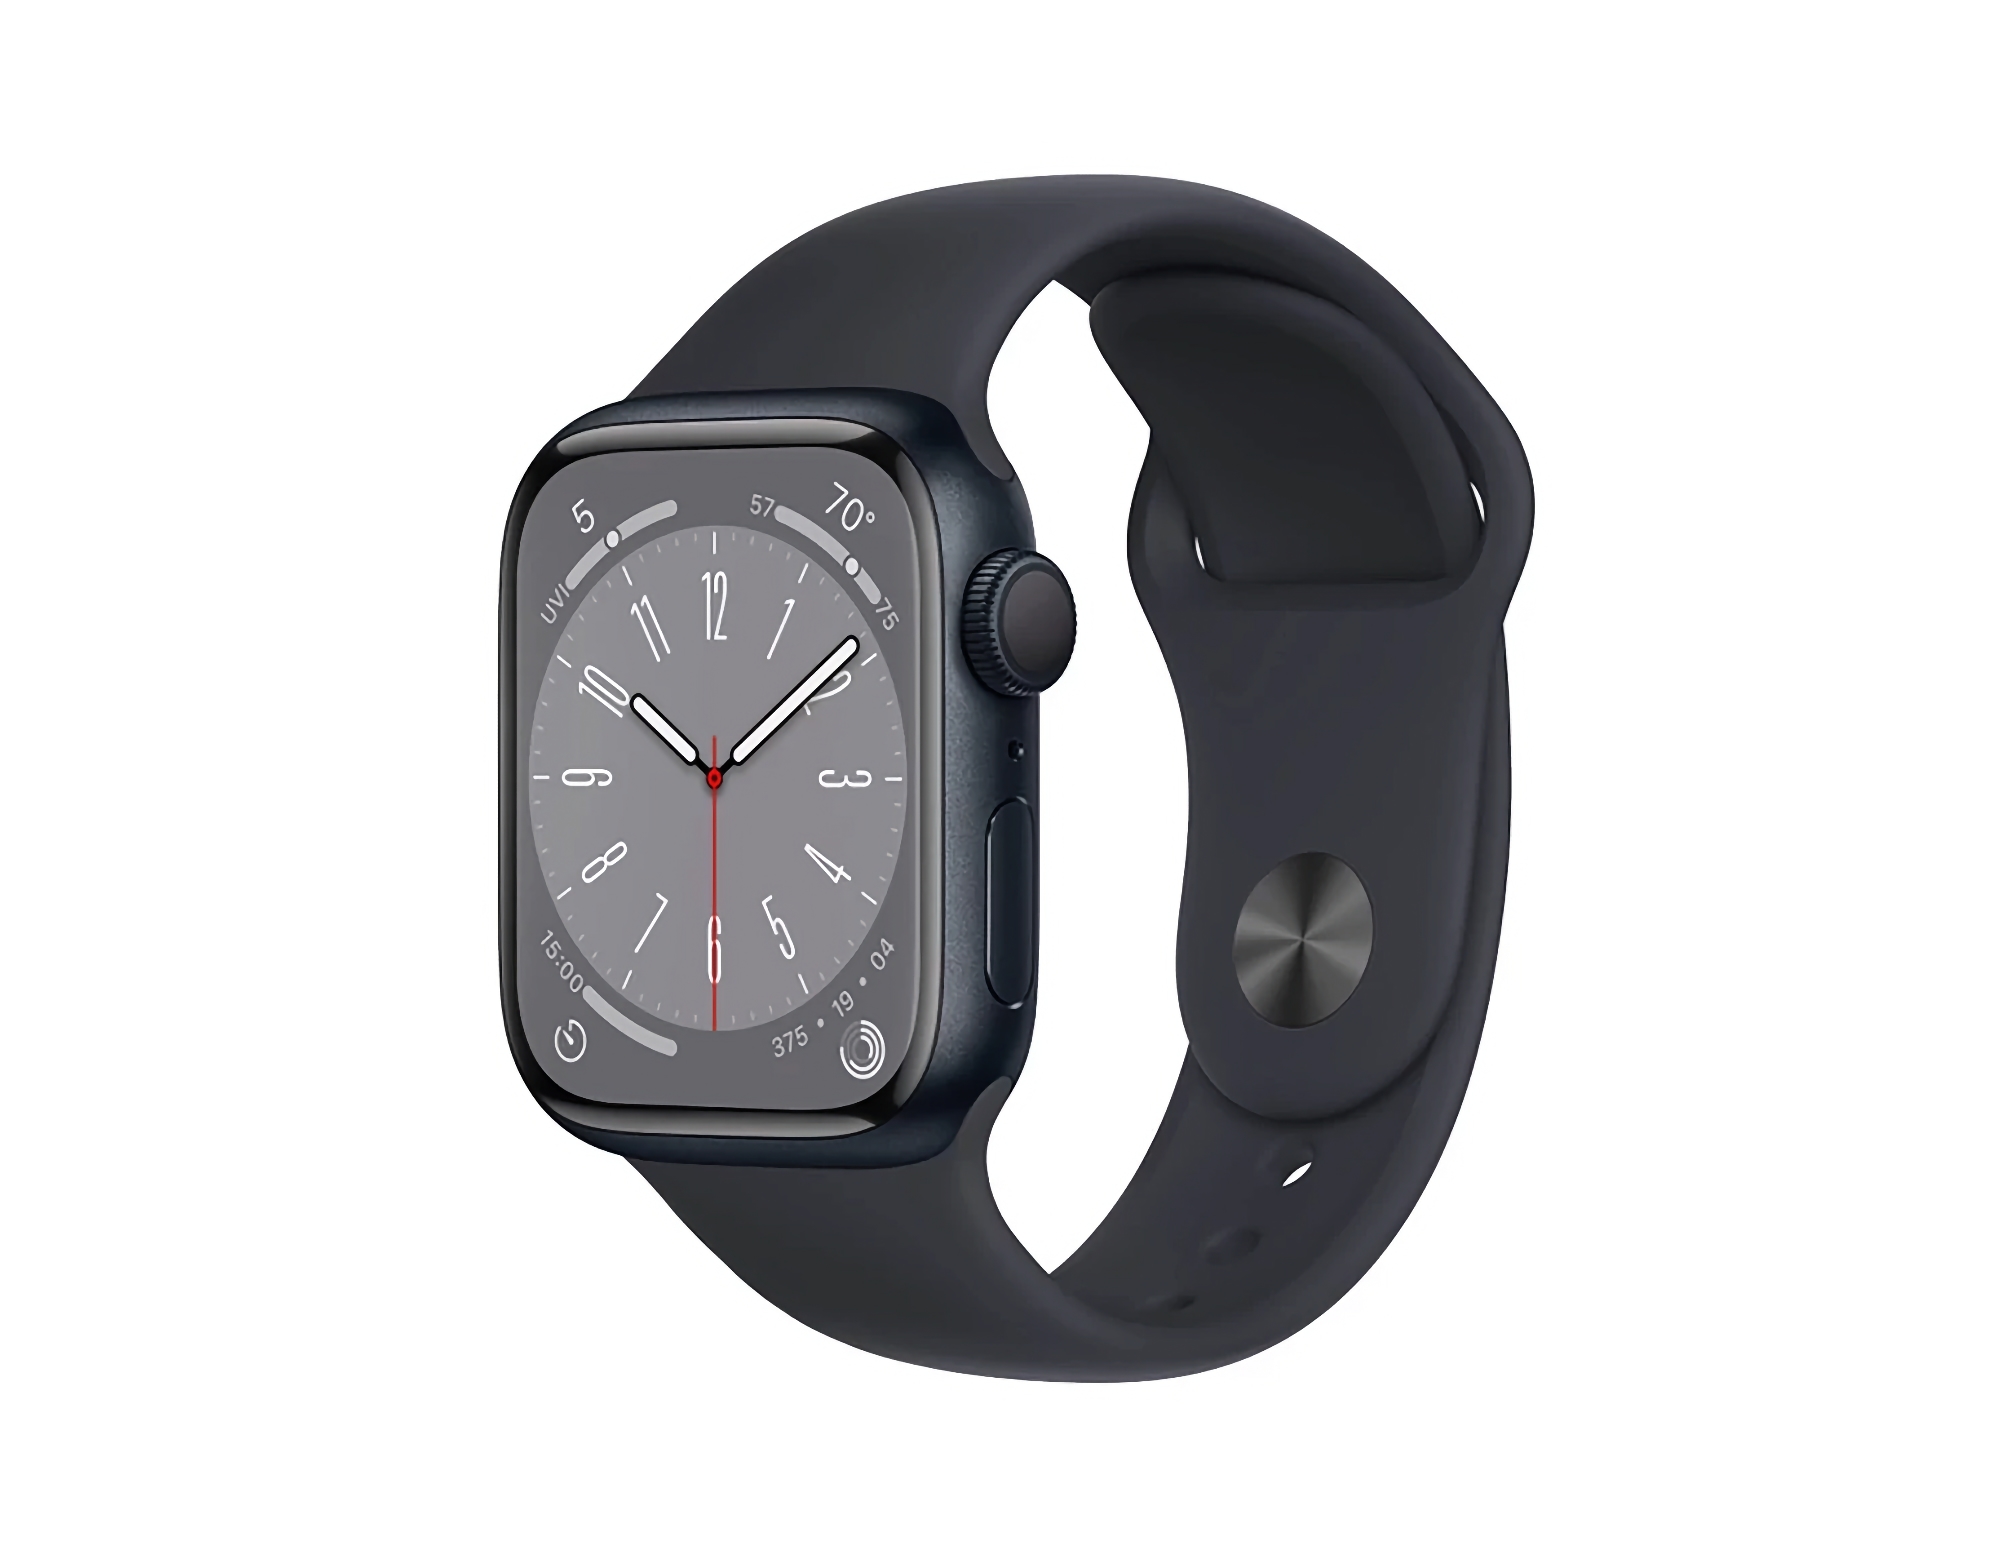 Aanbieding van de dag: Apple Watch Series 8 bij Amazon voor € 174 korting